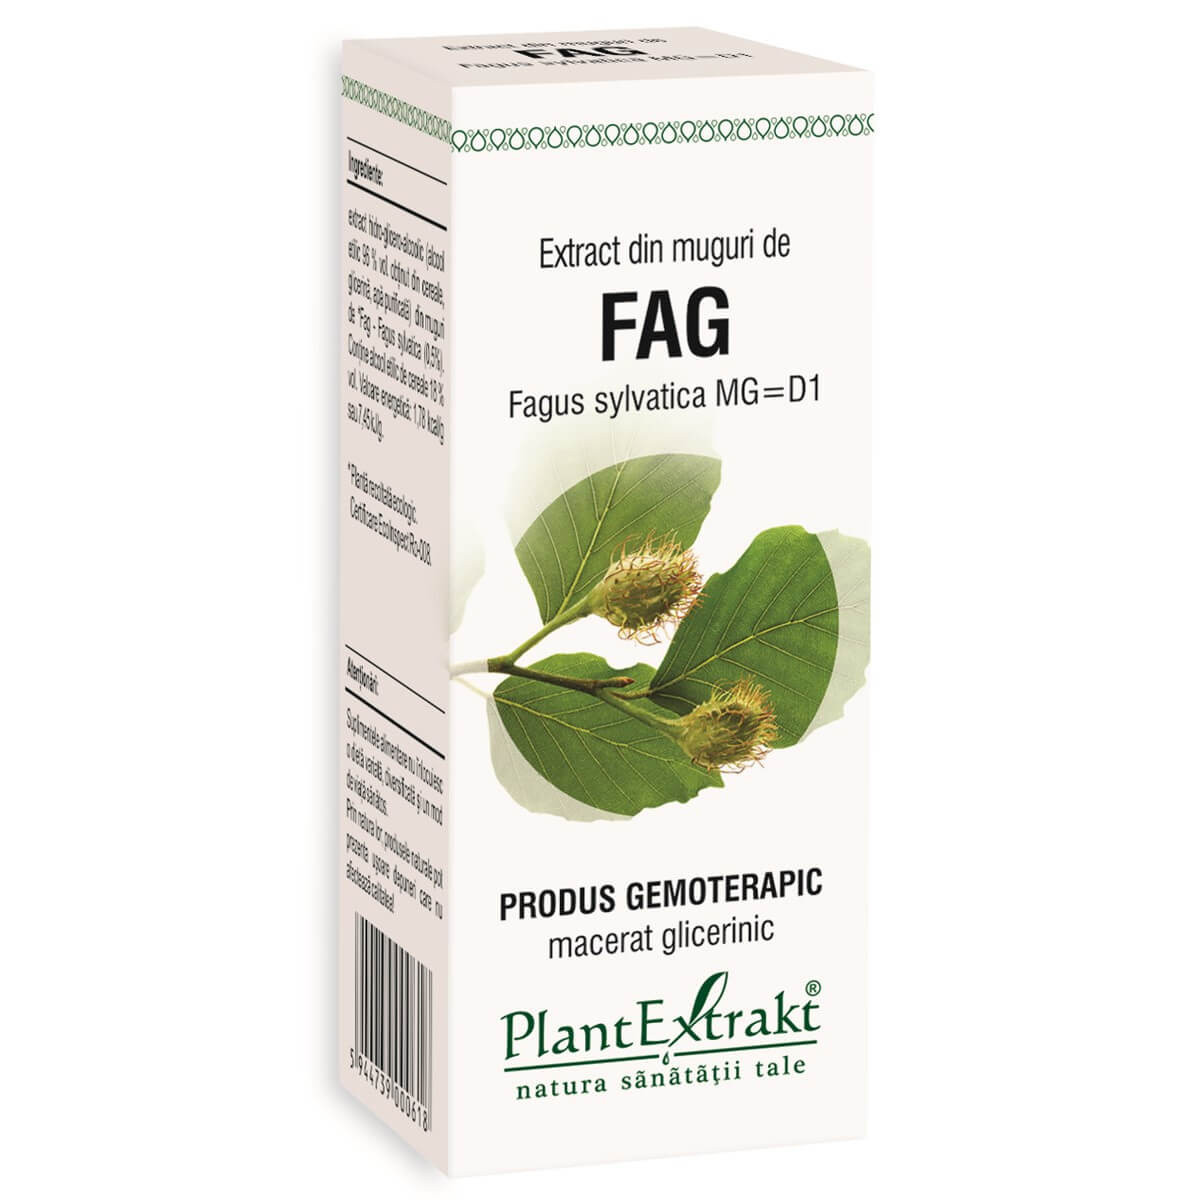 Extract din muguri de fag (FAGUS SYLVATICA)